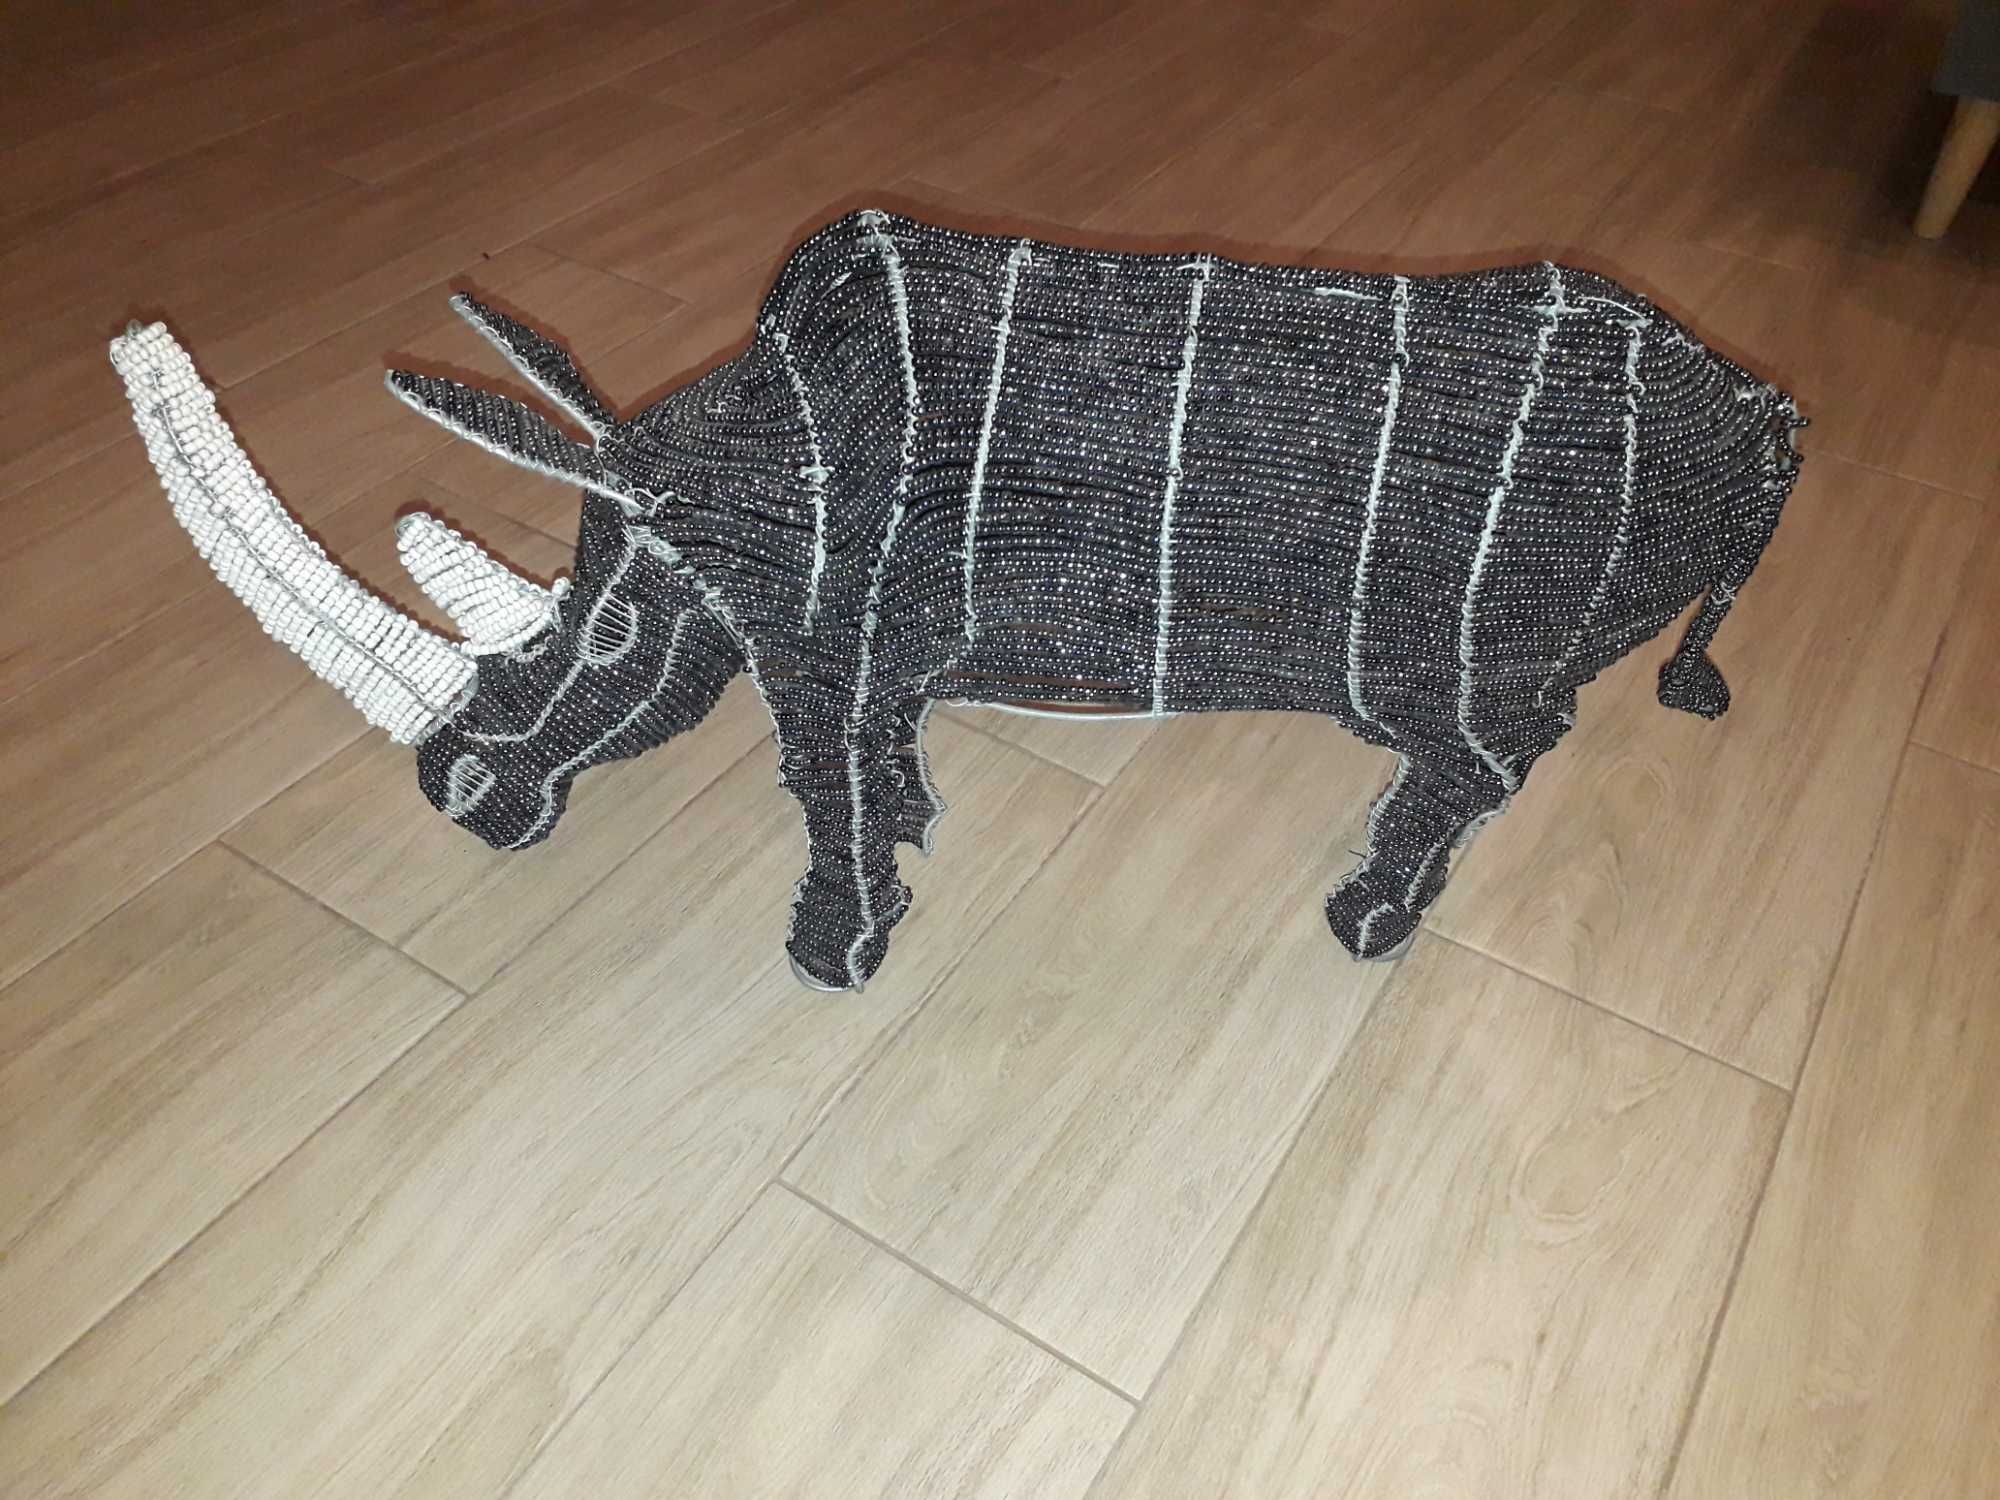 Designerska figurka nosorożca